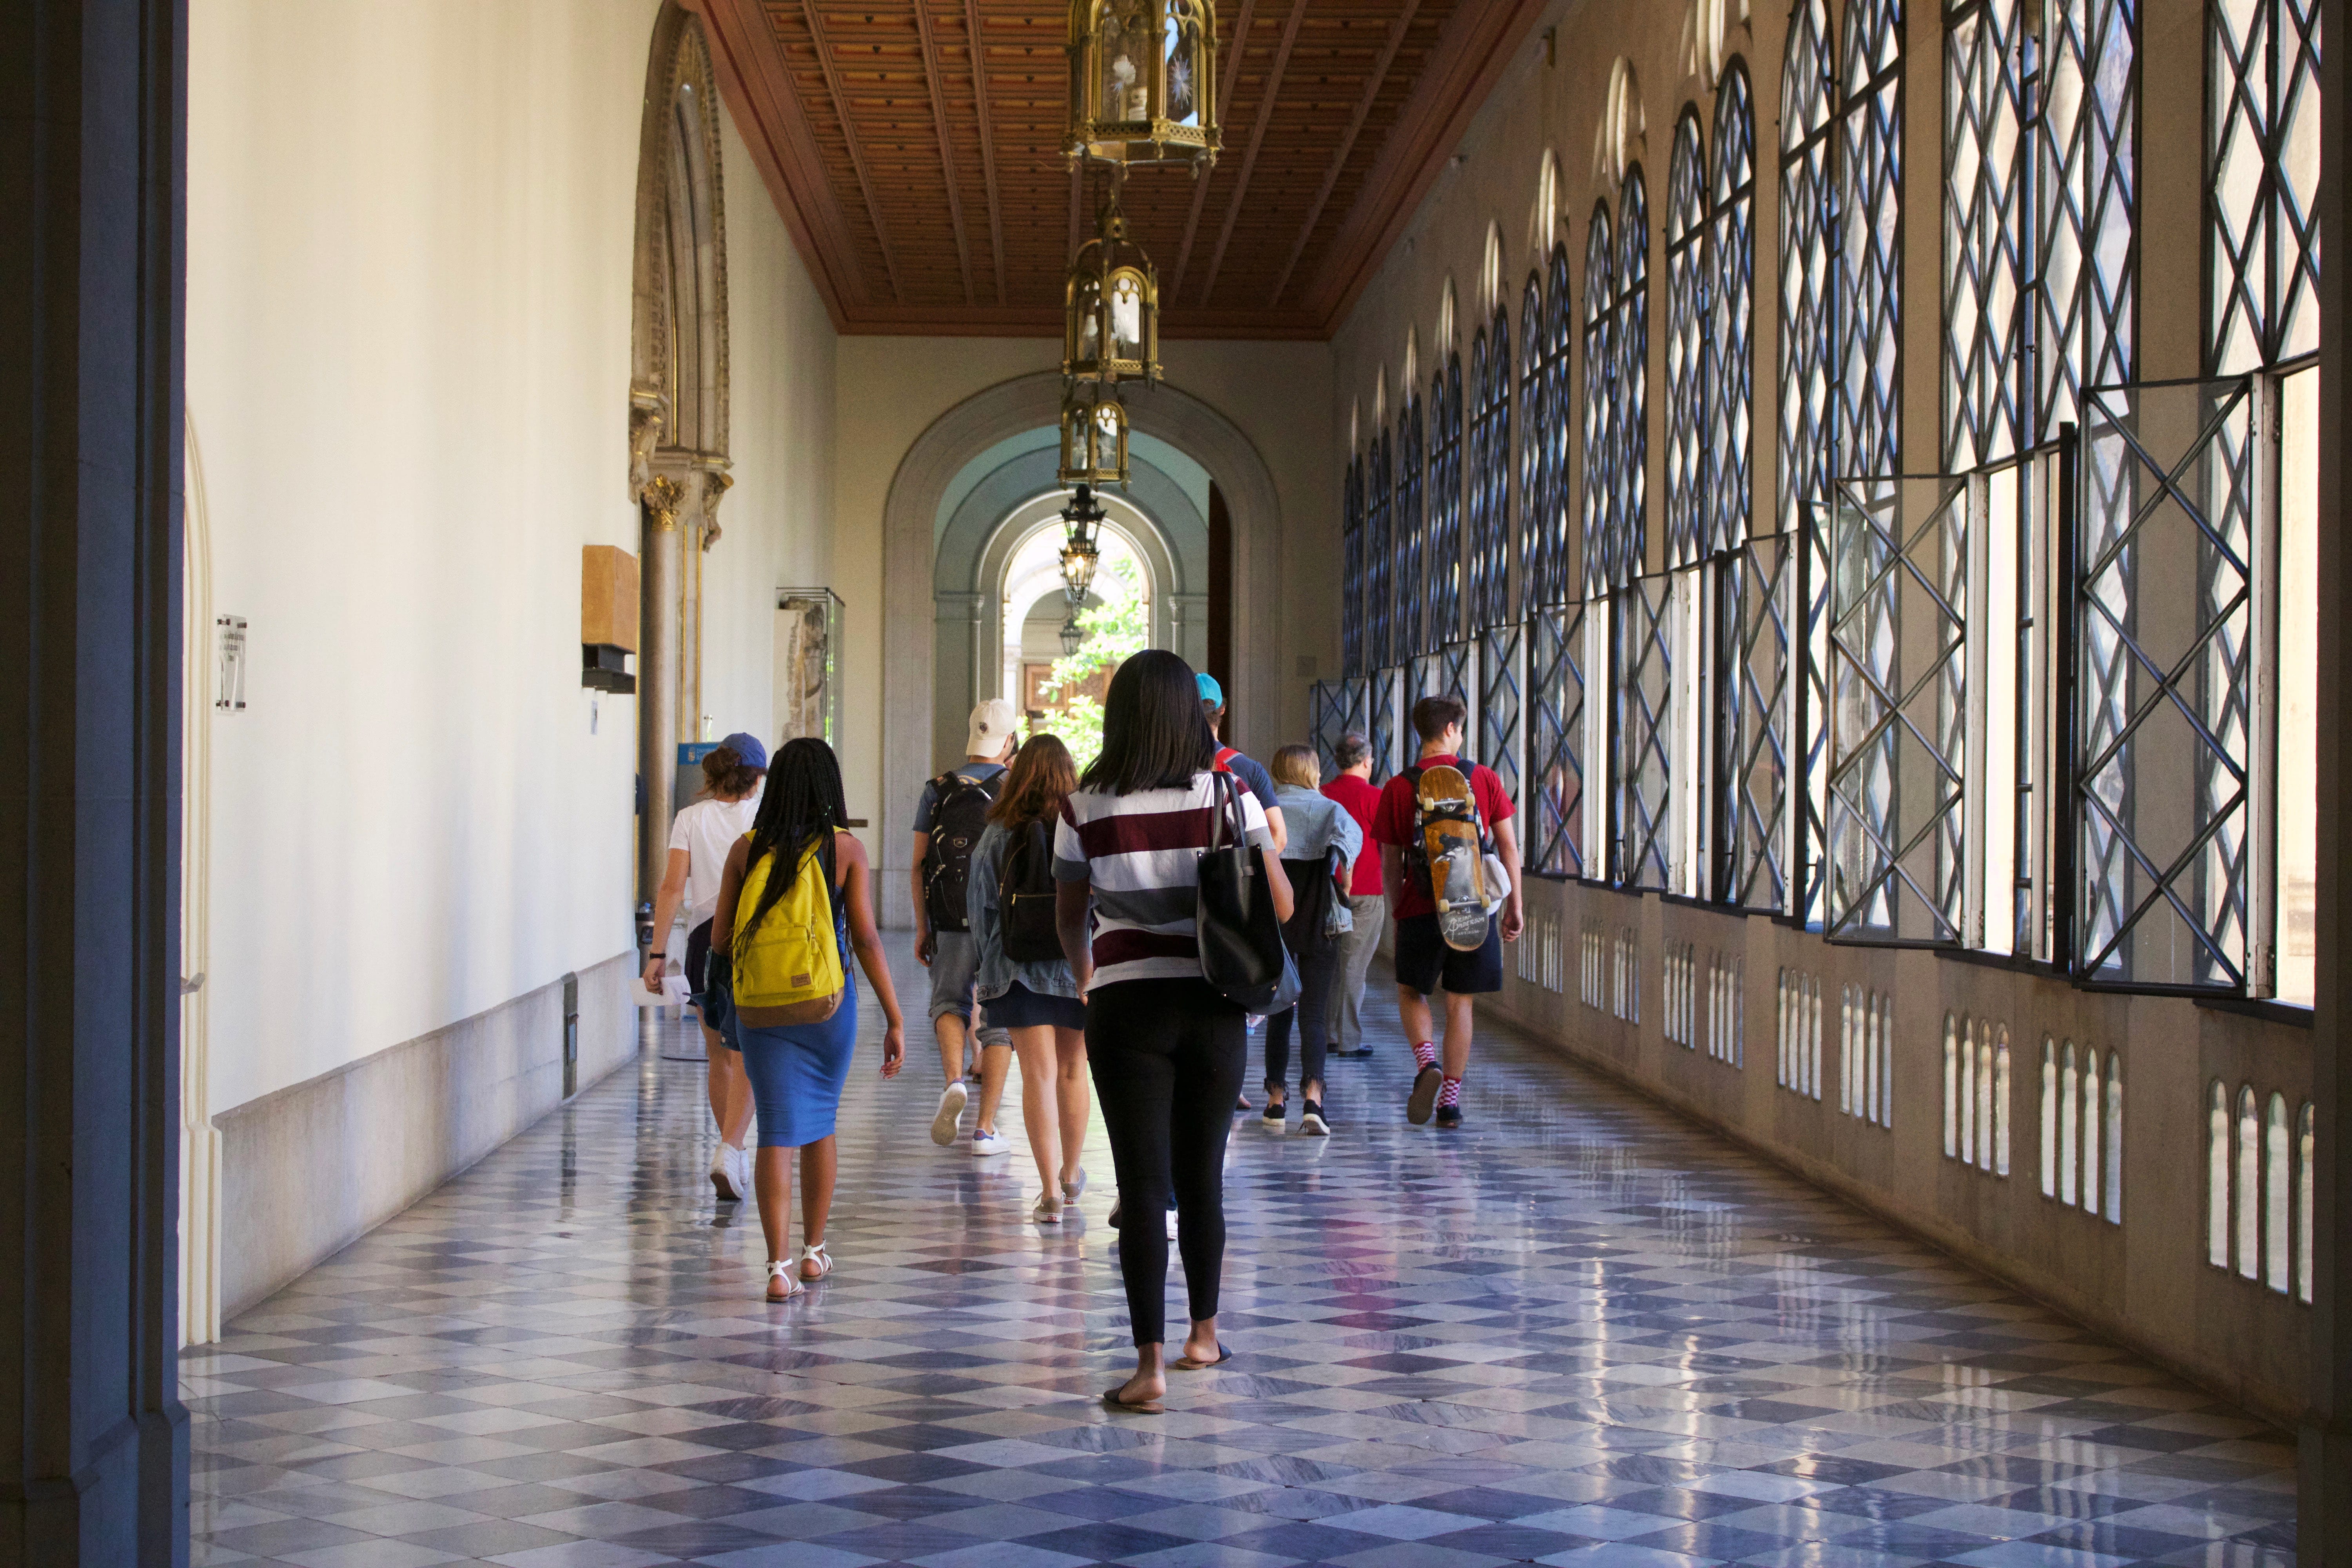 Недорогие университеты испании. как сэкономить по-умному?